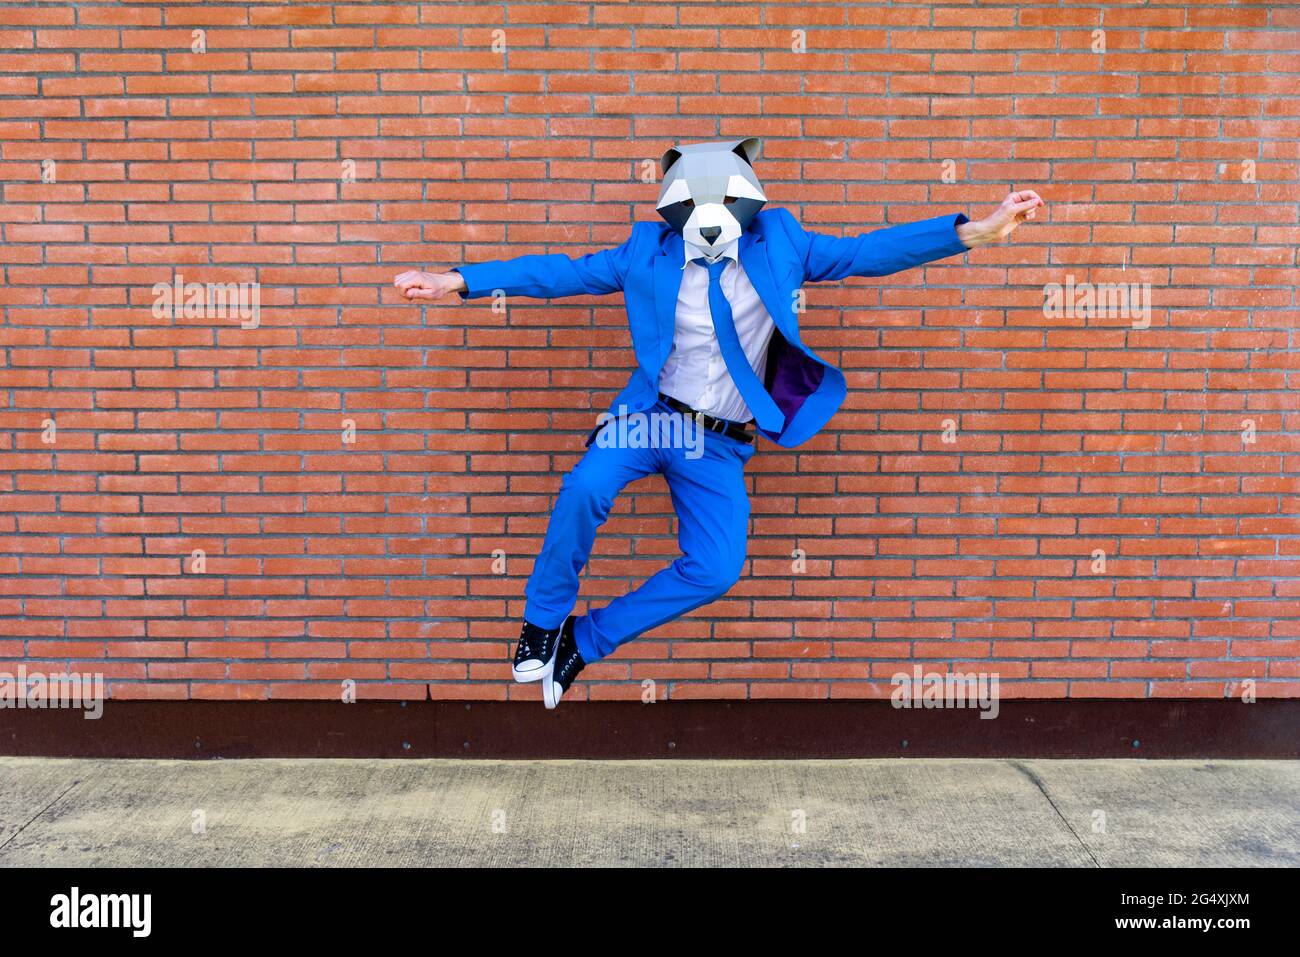 Homme portant un costume bleu vif et un masque de raton laveur qui saute contre un mur de briques Banque D'Images